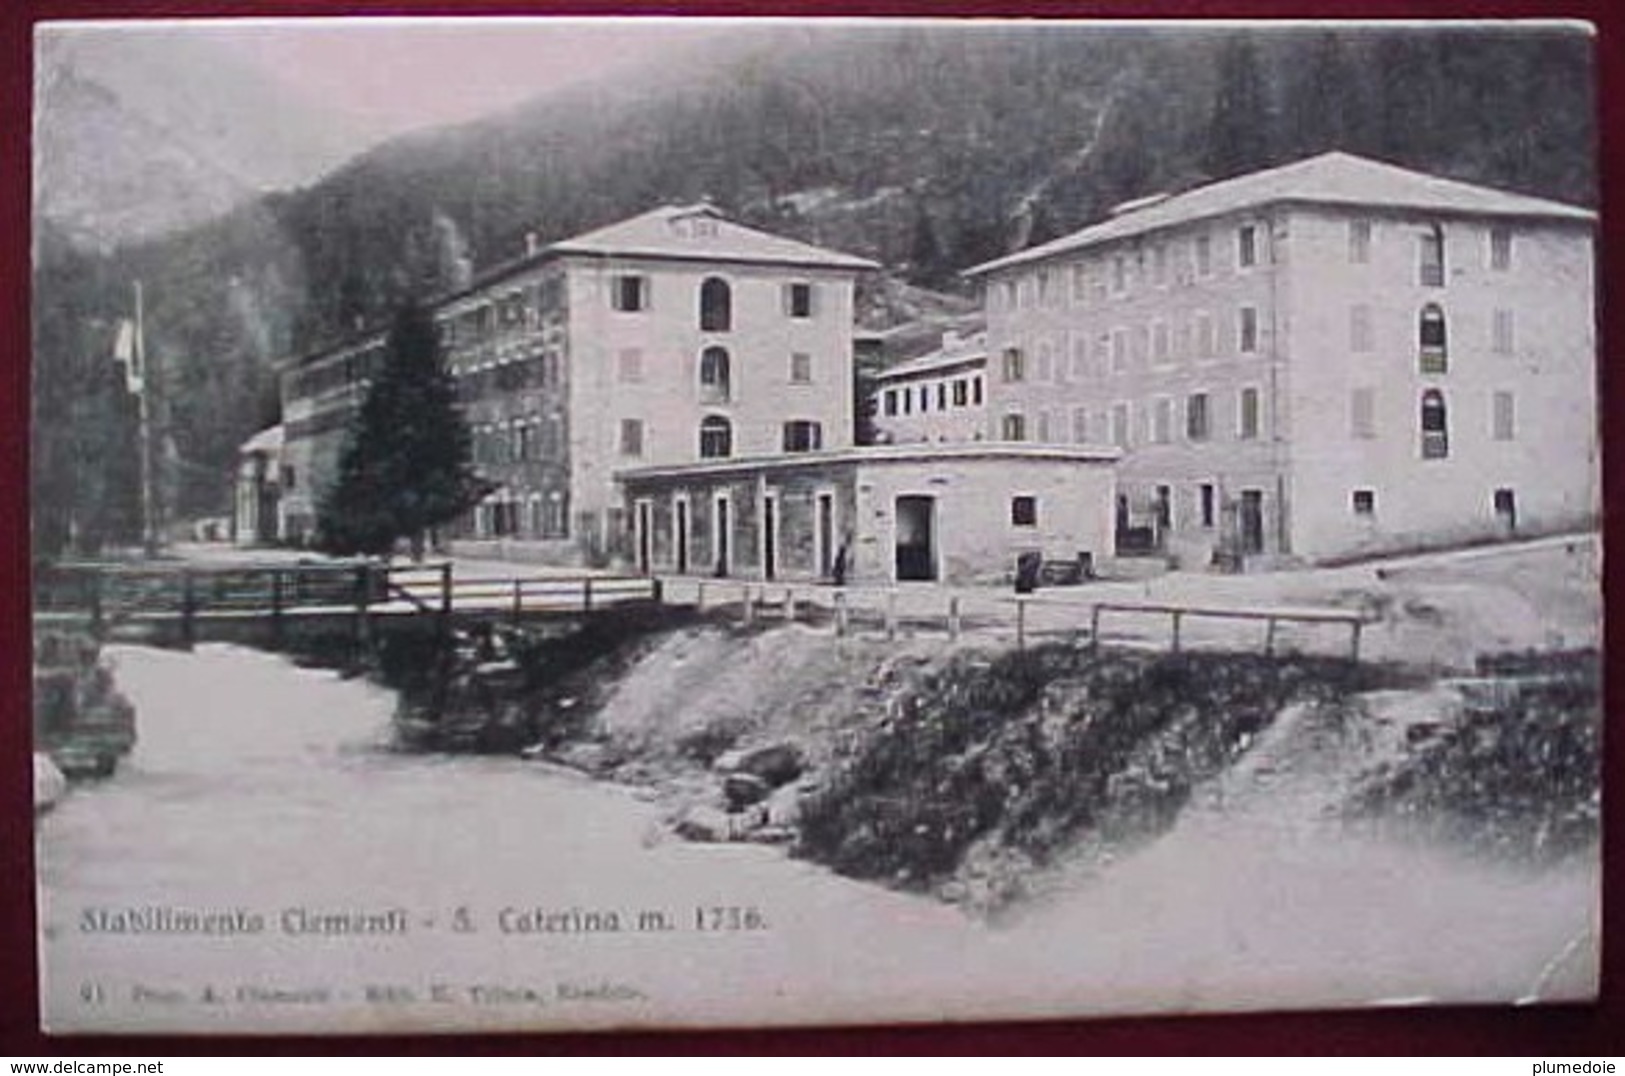 Cpa SANTA CATERINA VALFURVA - SONDRIO - STABILIMENTO CLEMENTI 1909 - Sondrio